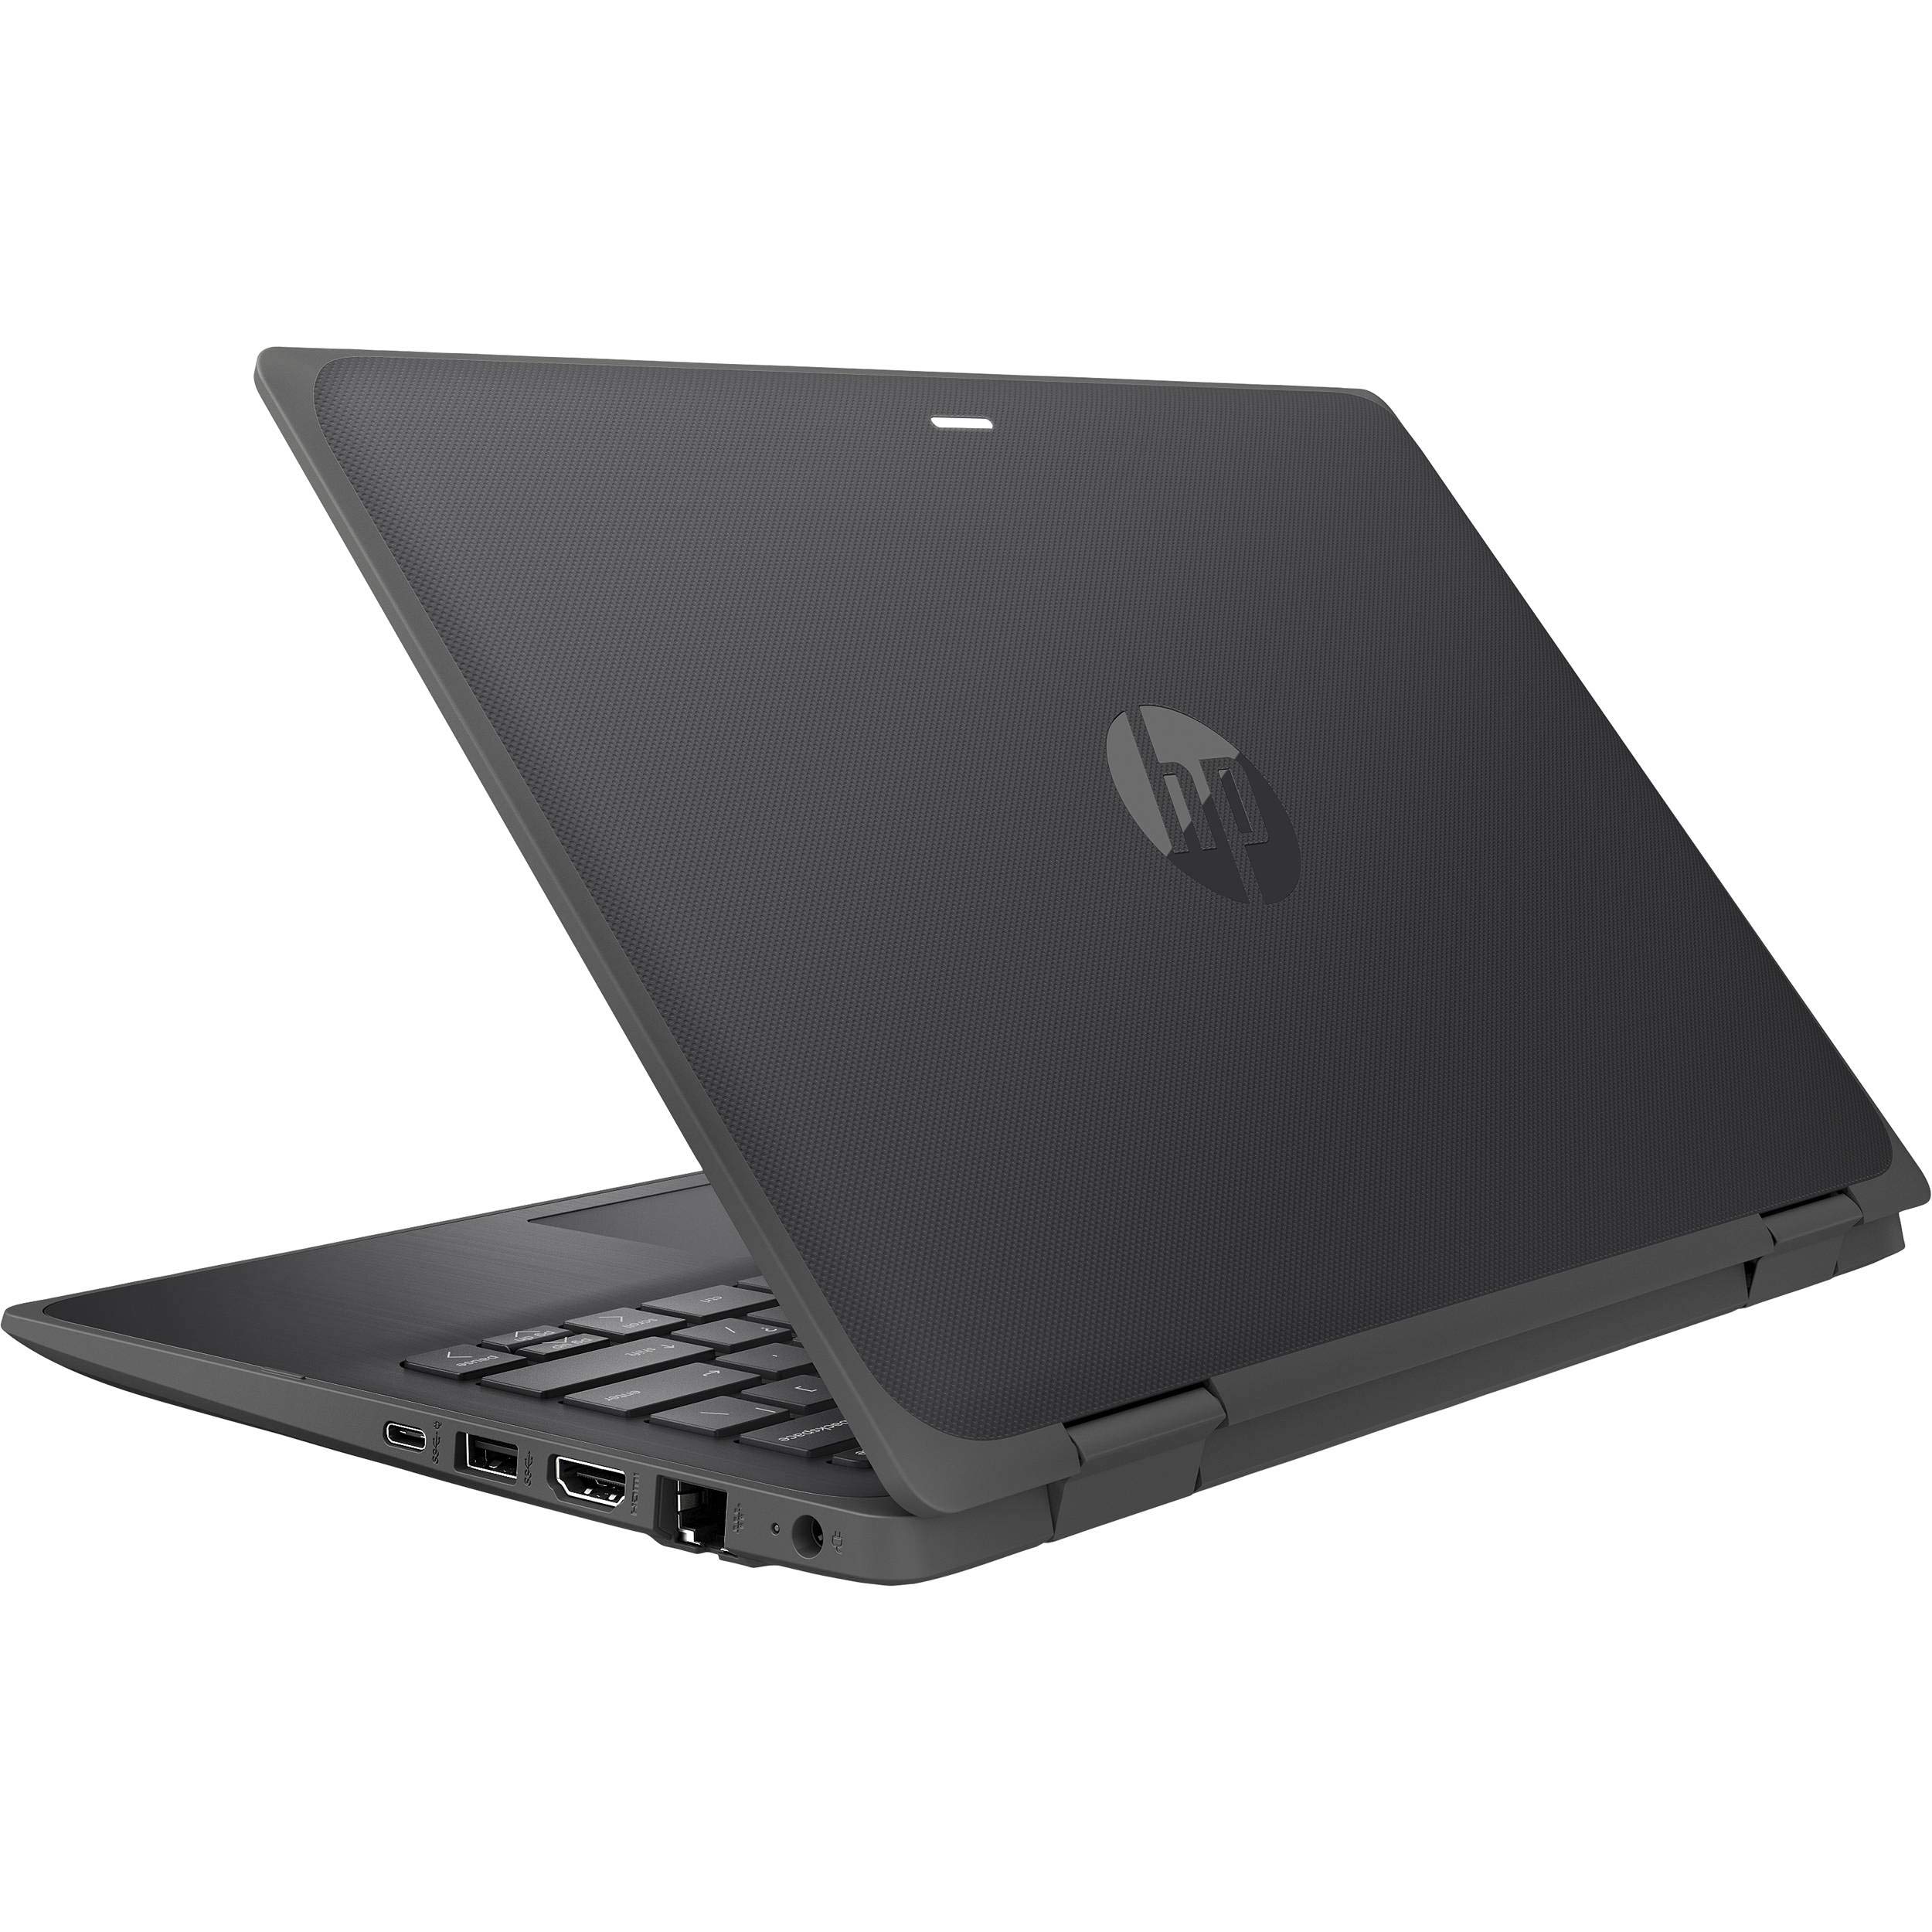 ProBook x360 11 G6 EE Notebook PC